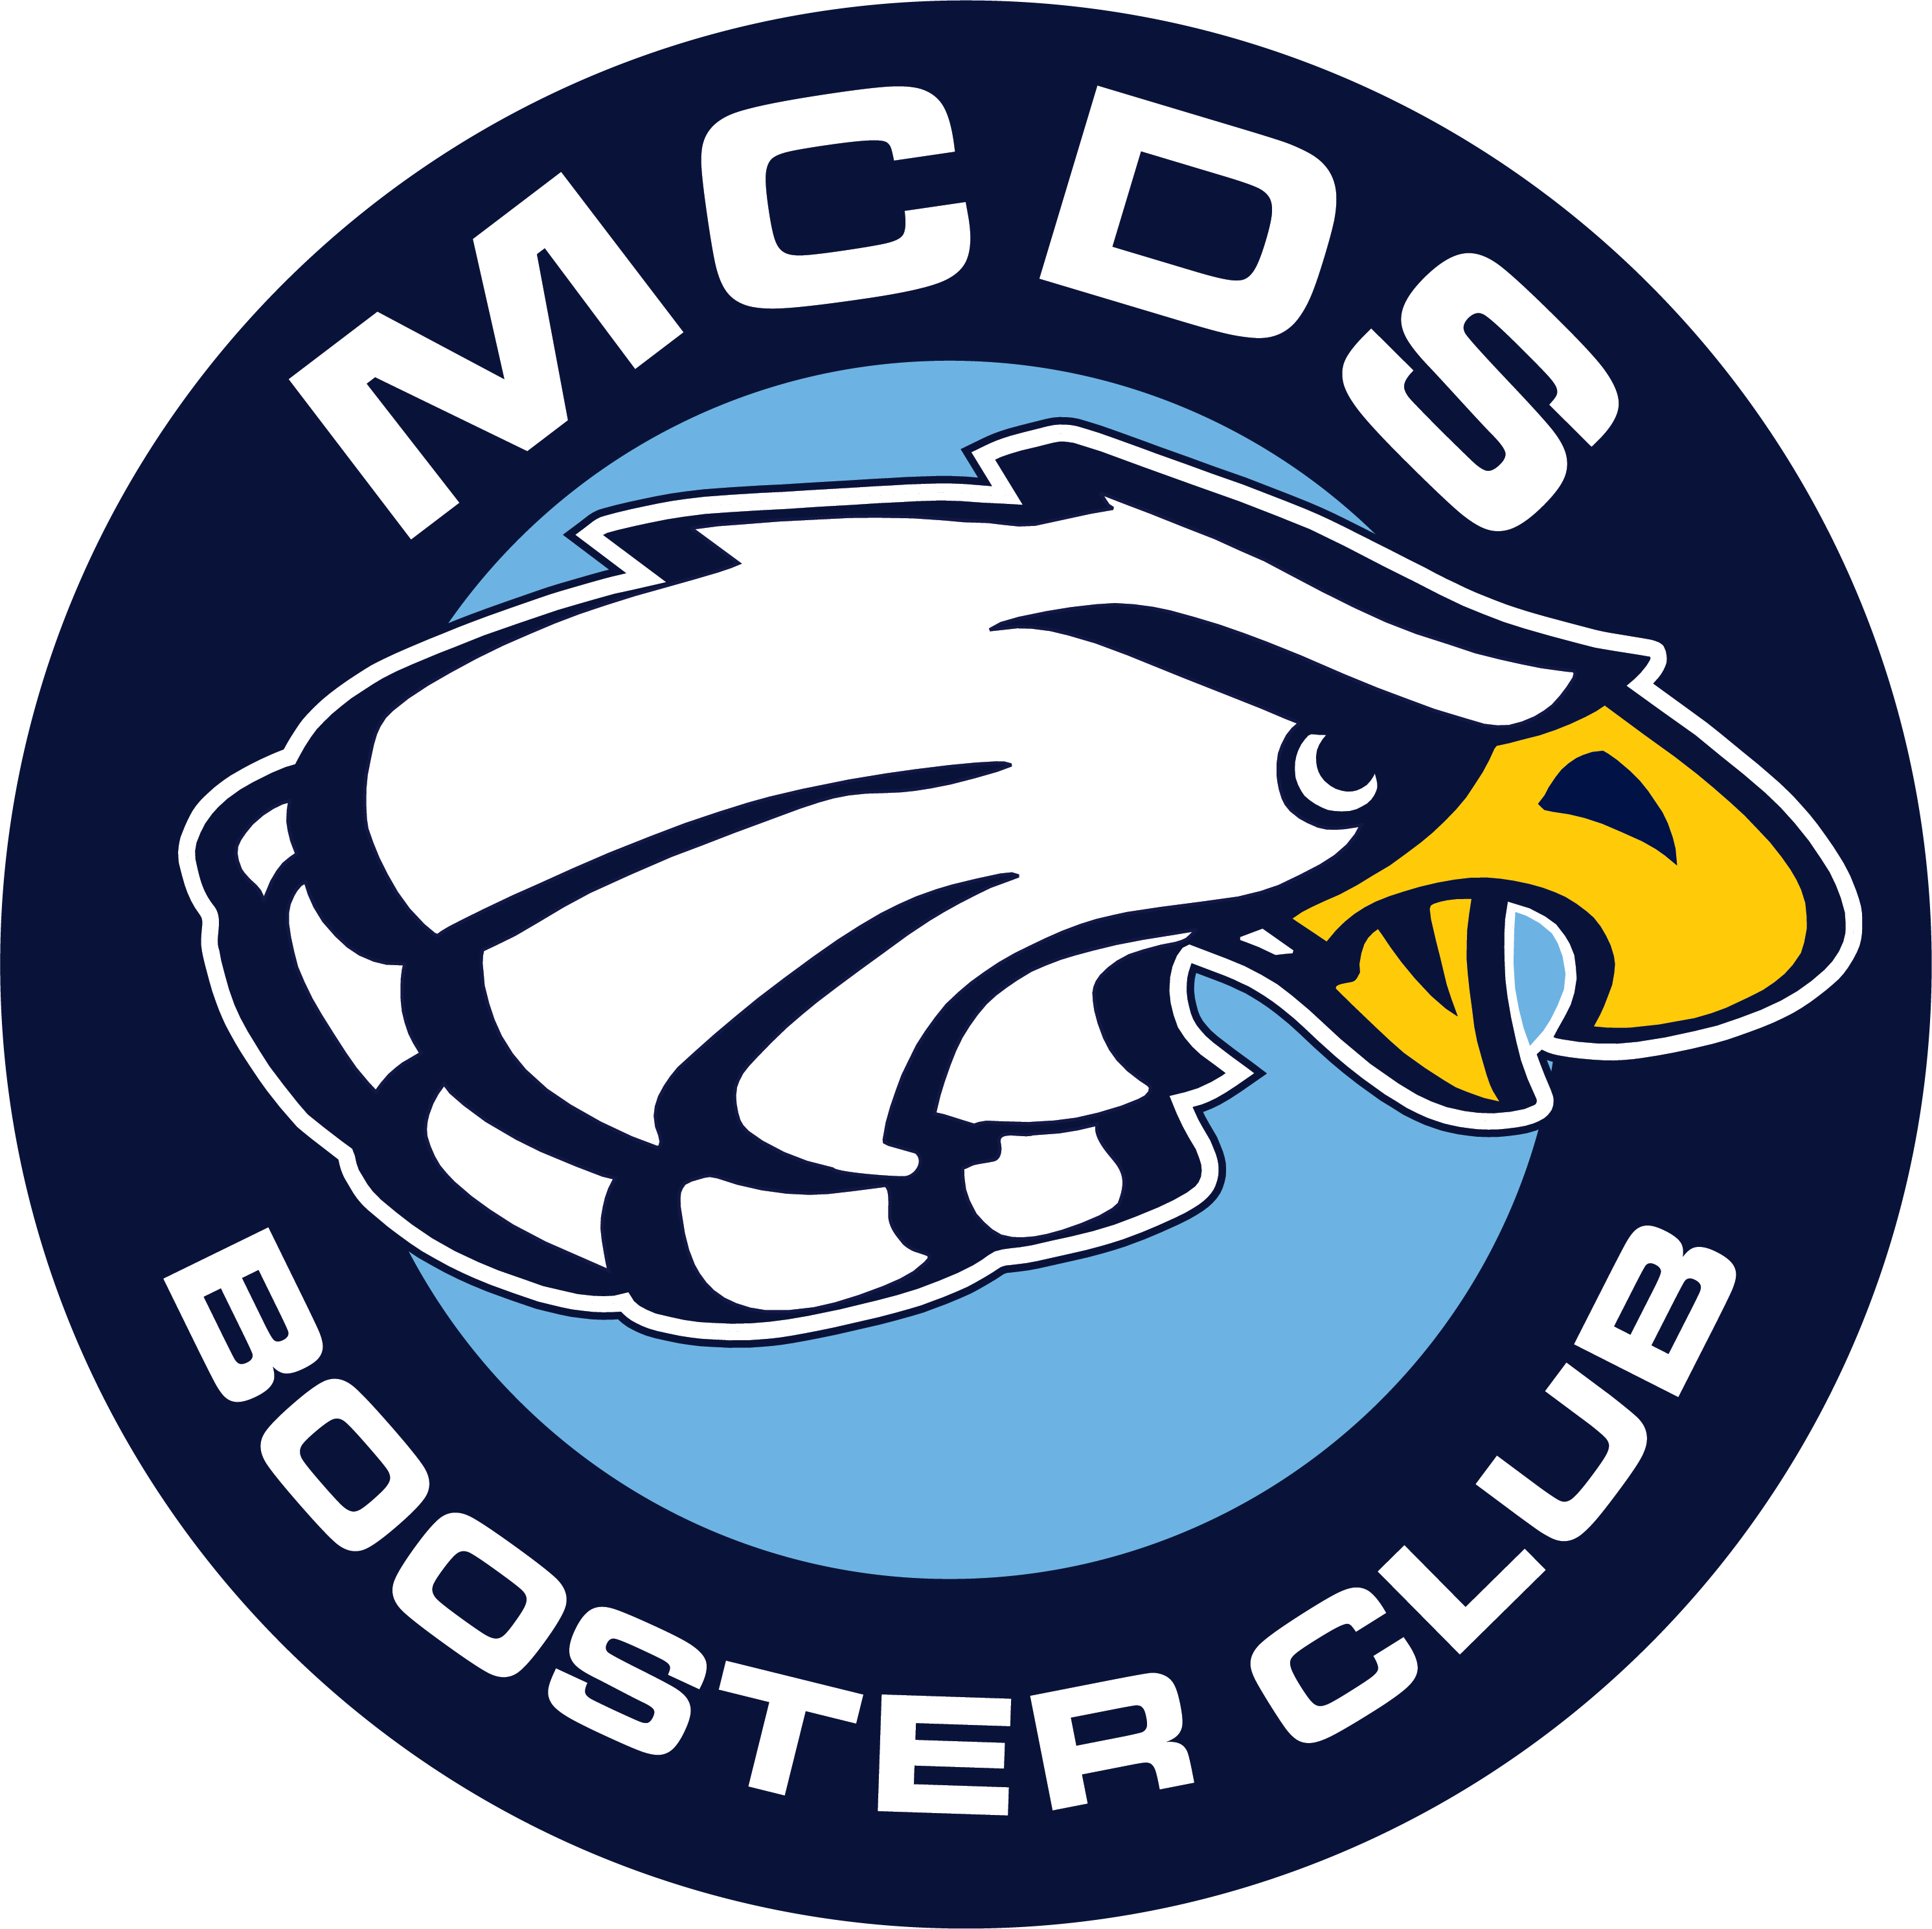 Booster Club Logo